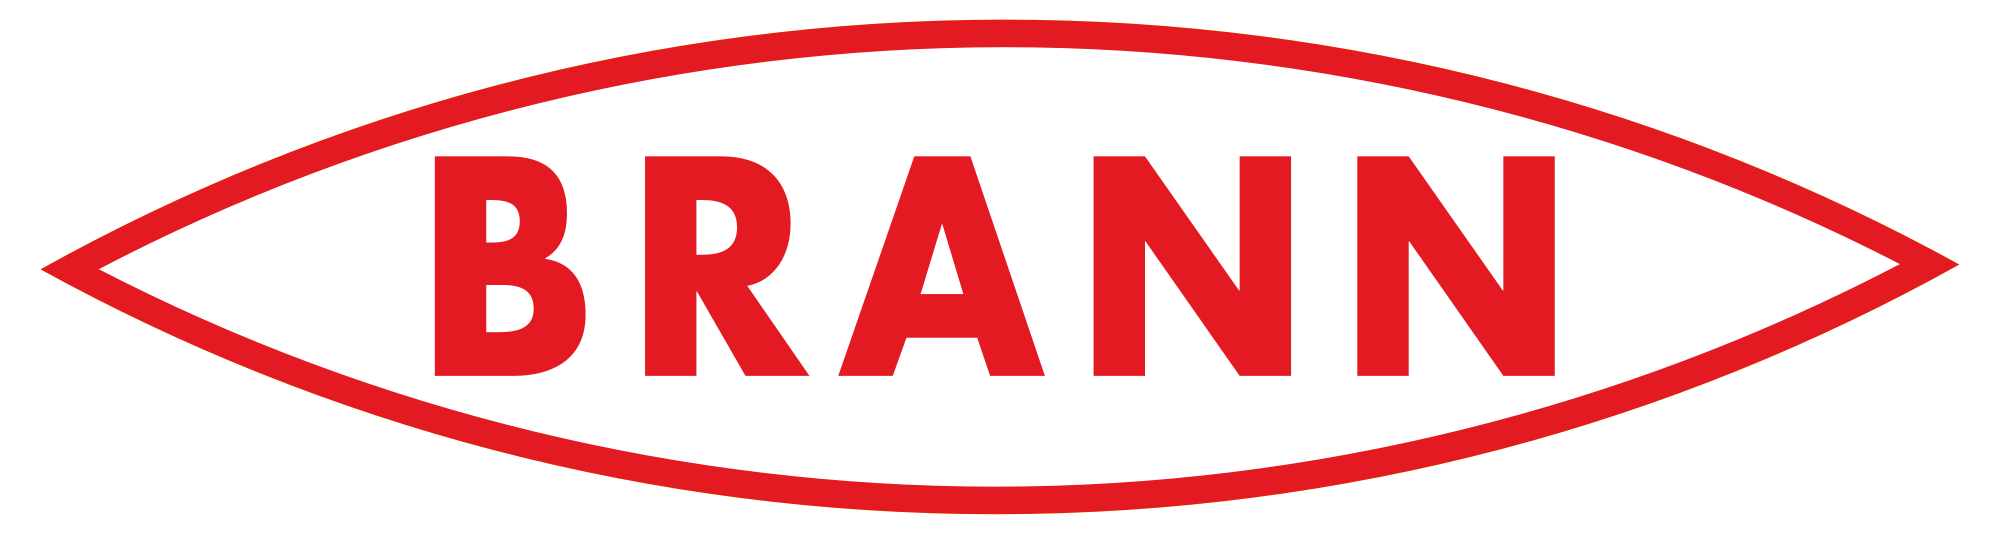 SK Brann logo